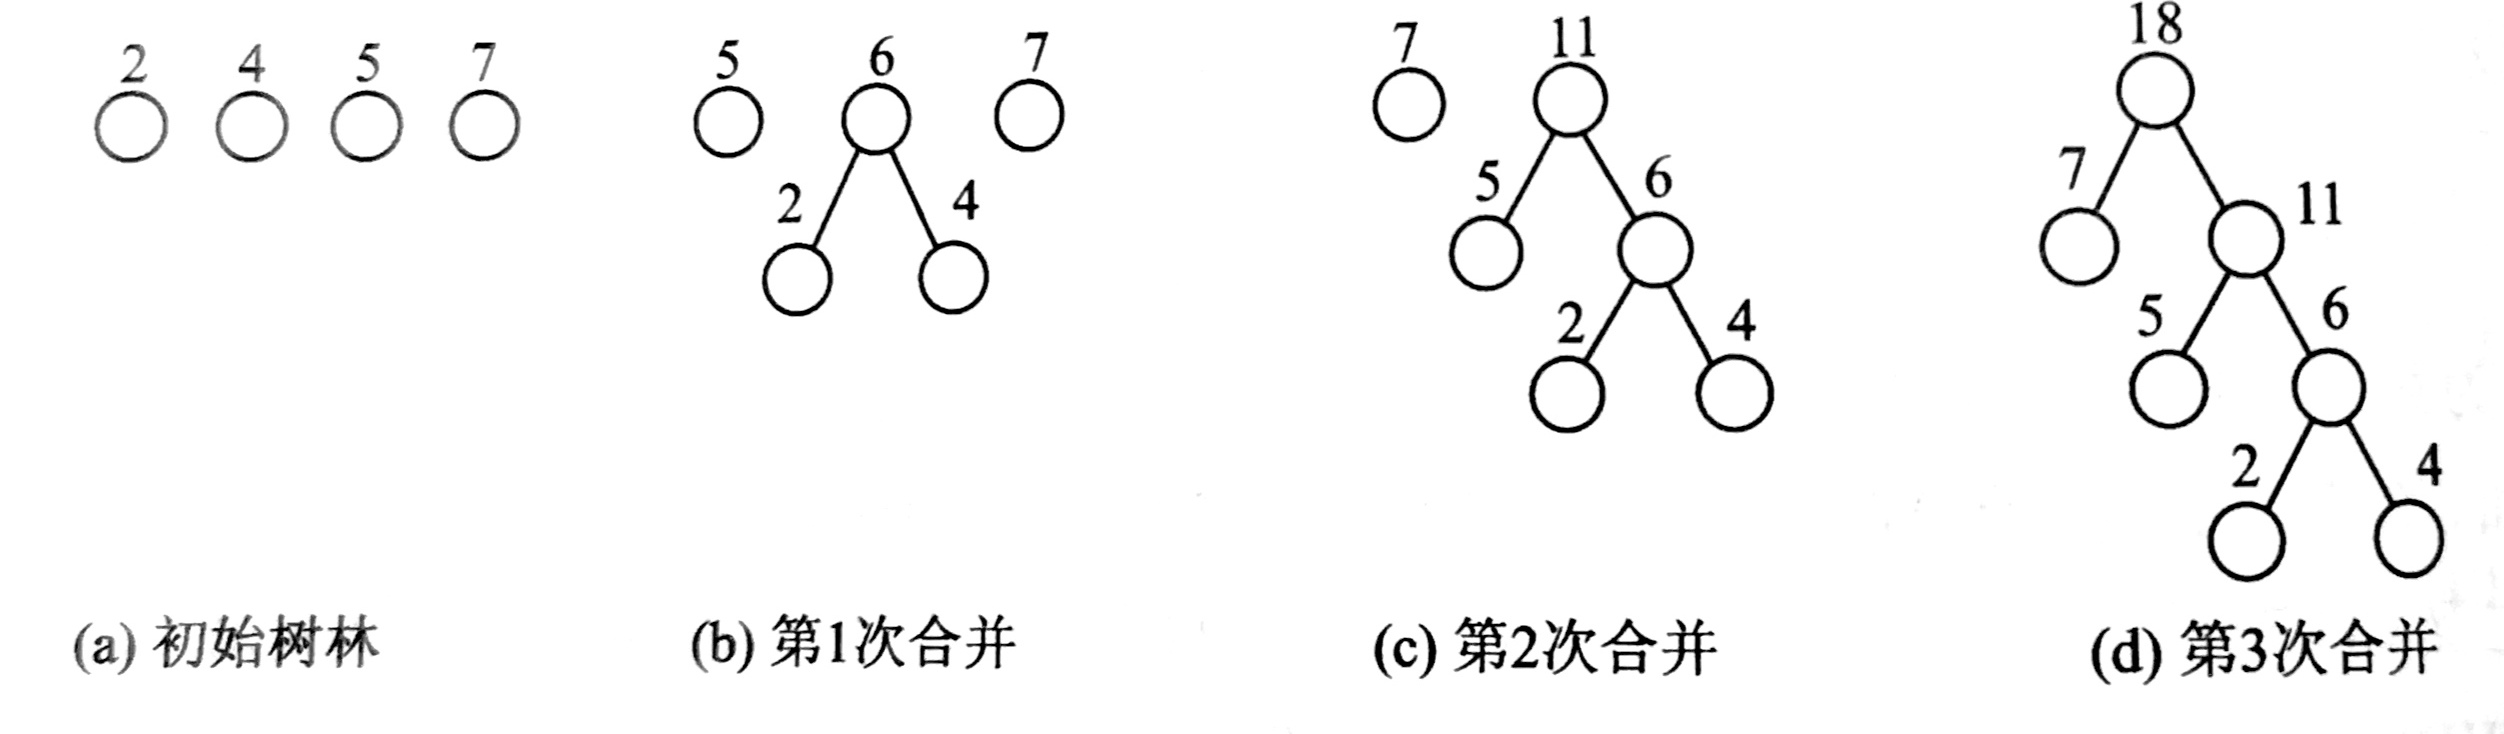 构造哈法曼树的过程